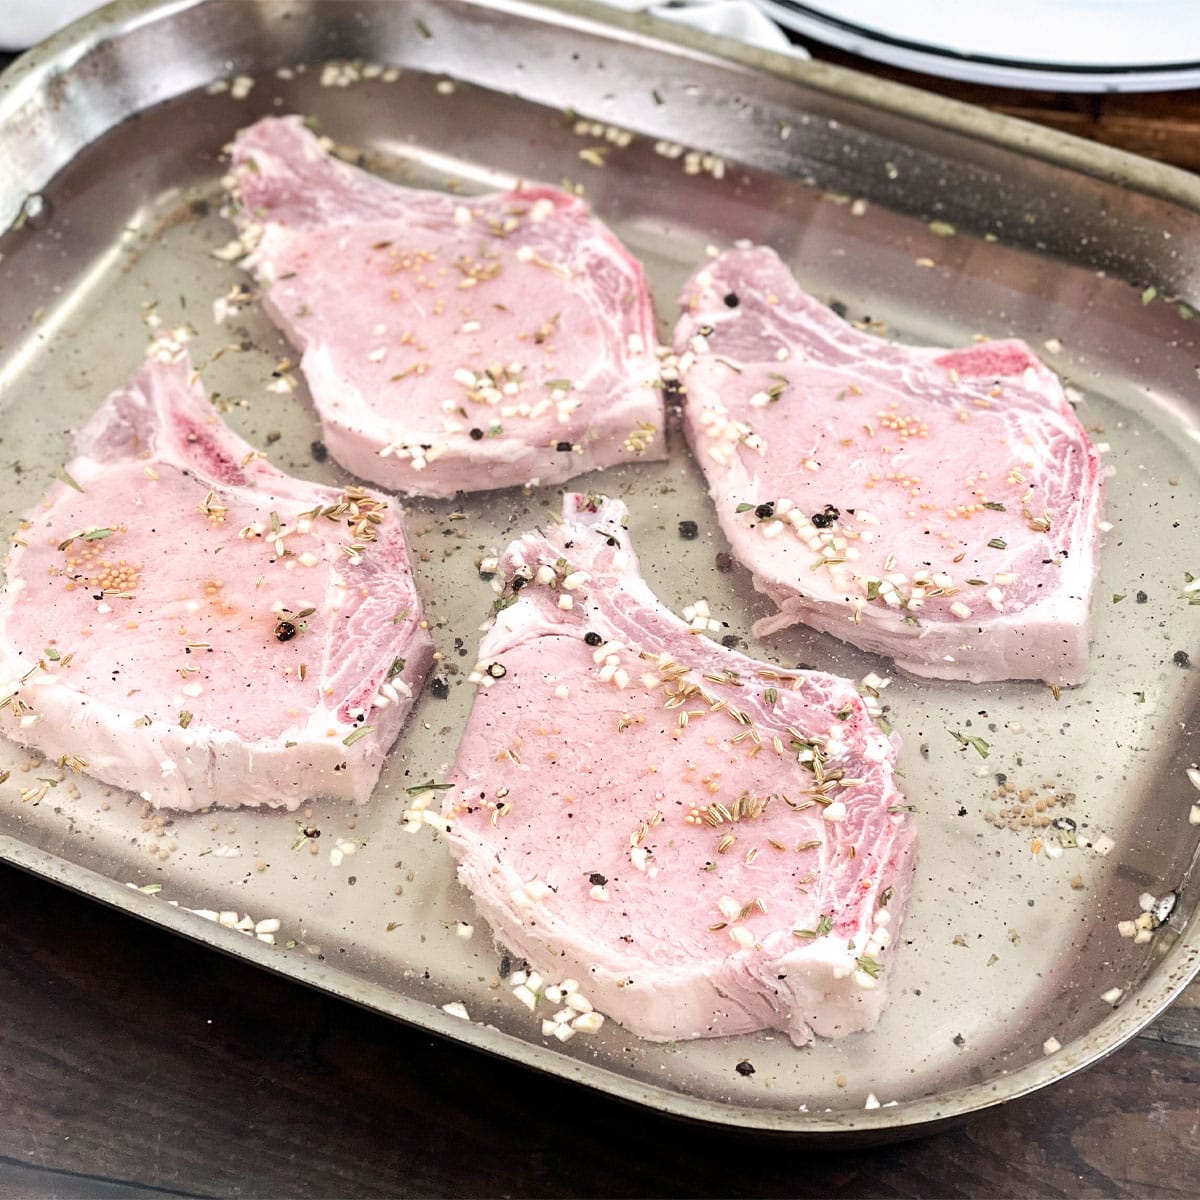 Raw bone-in pork chops in a brine